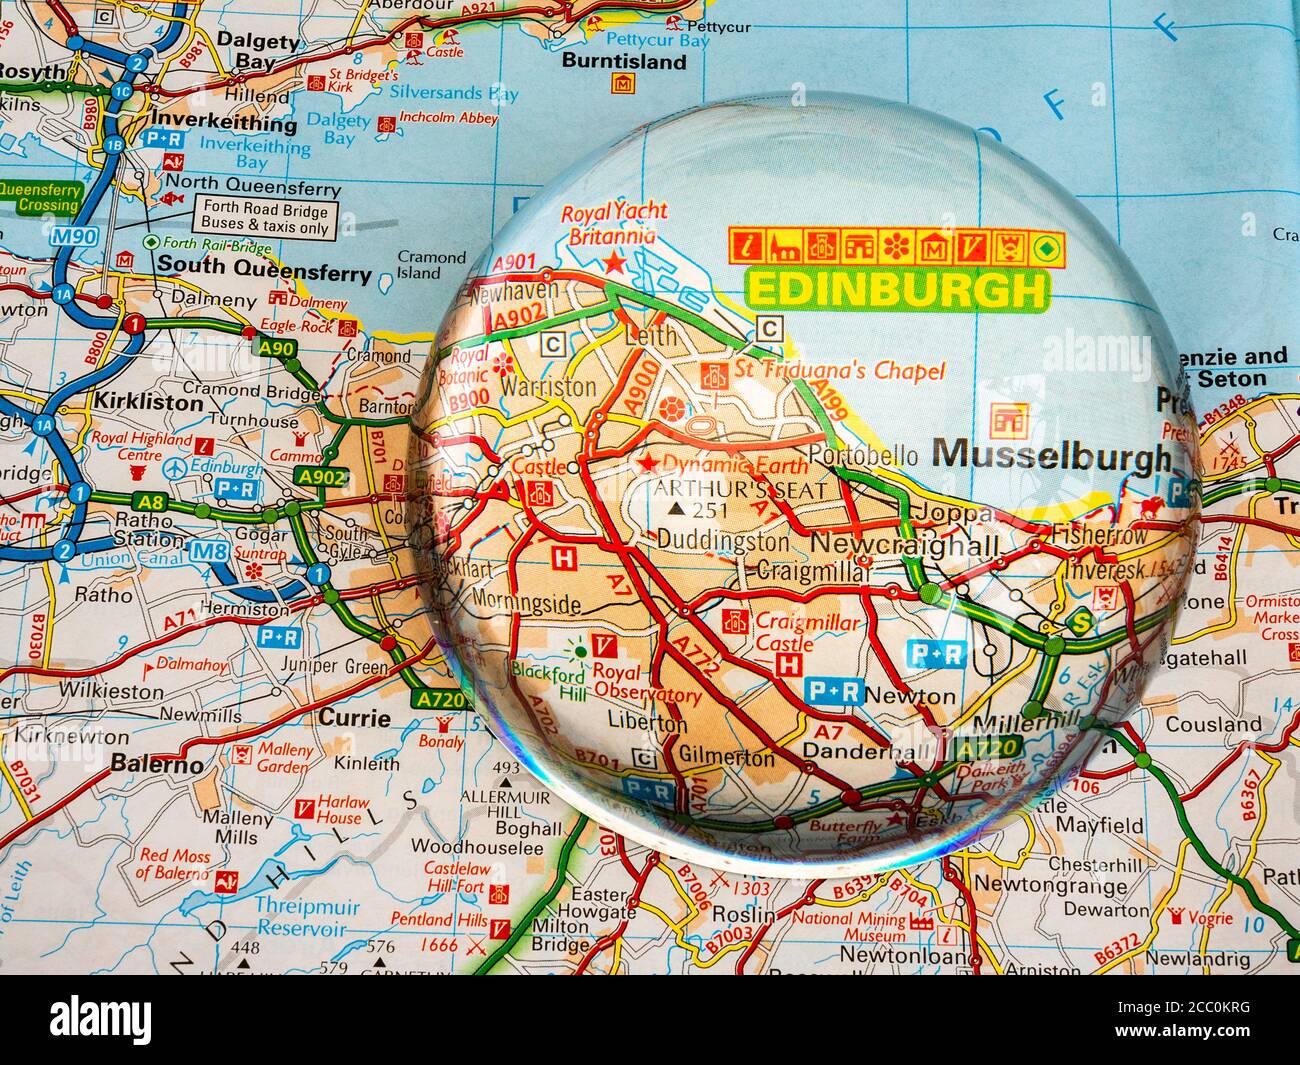 Nahaufnahme eines kuppelförmigen Vergrößerungsglases über einer Seite einer britischen Straßenatlas-Karte, wobei die Gegend von Edinburgh in Schottland vergrößert wurde, um eine genauere Ansicht zu erhalten. Stockfoto